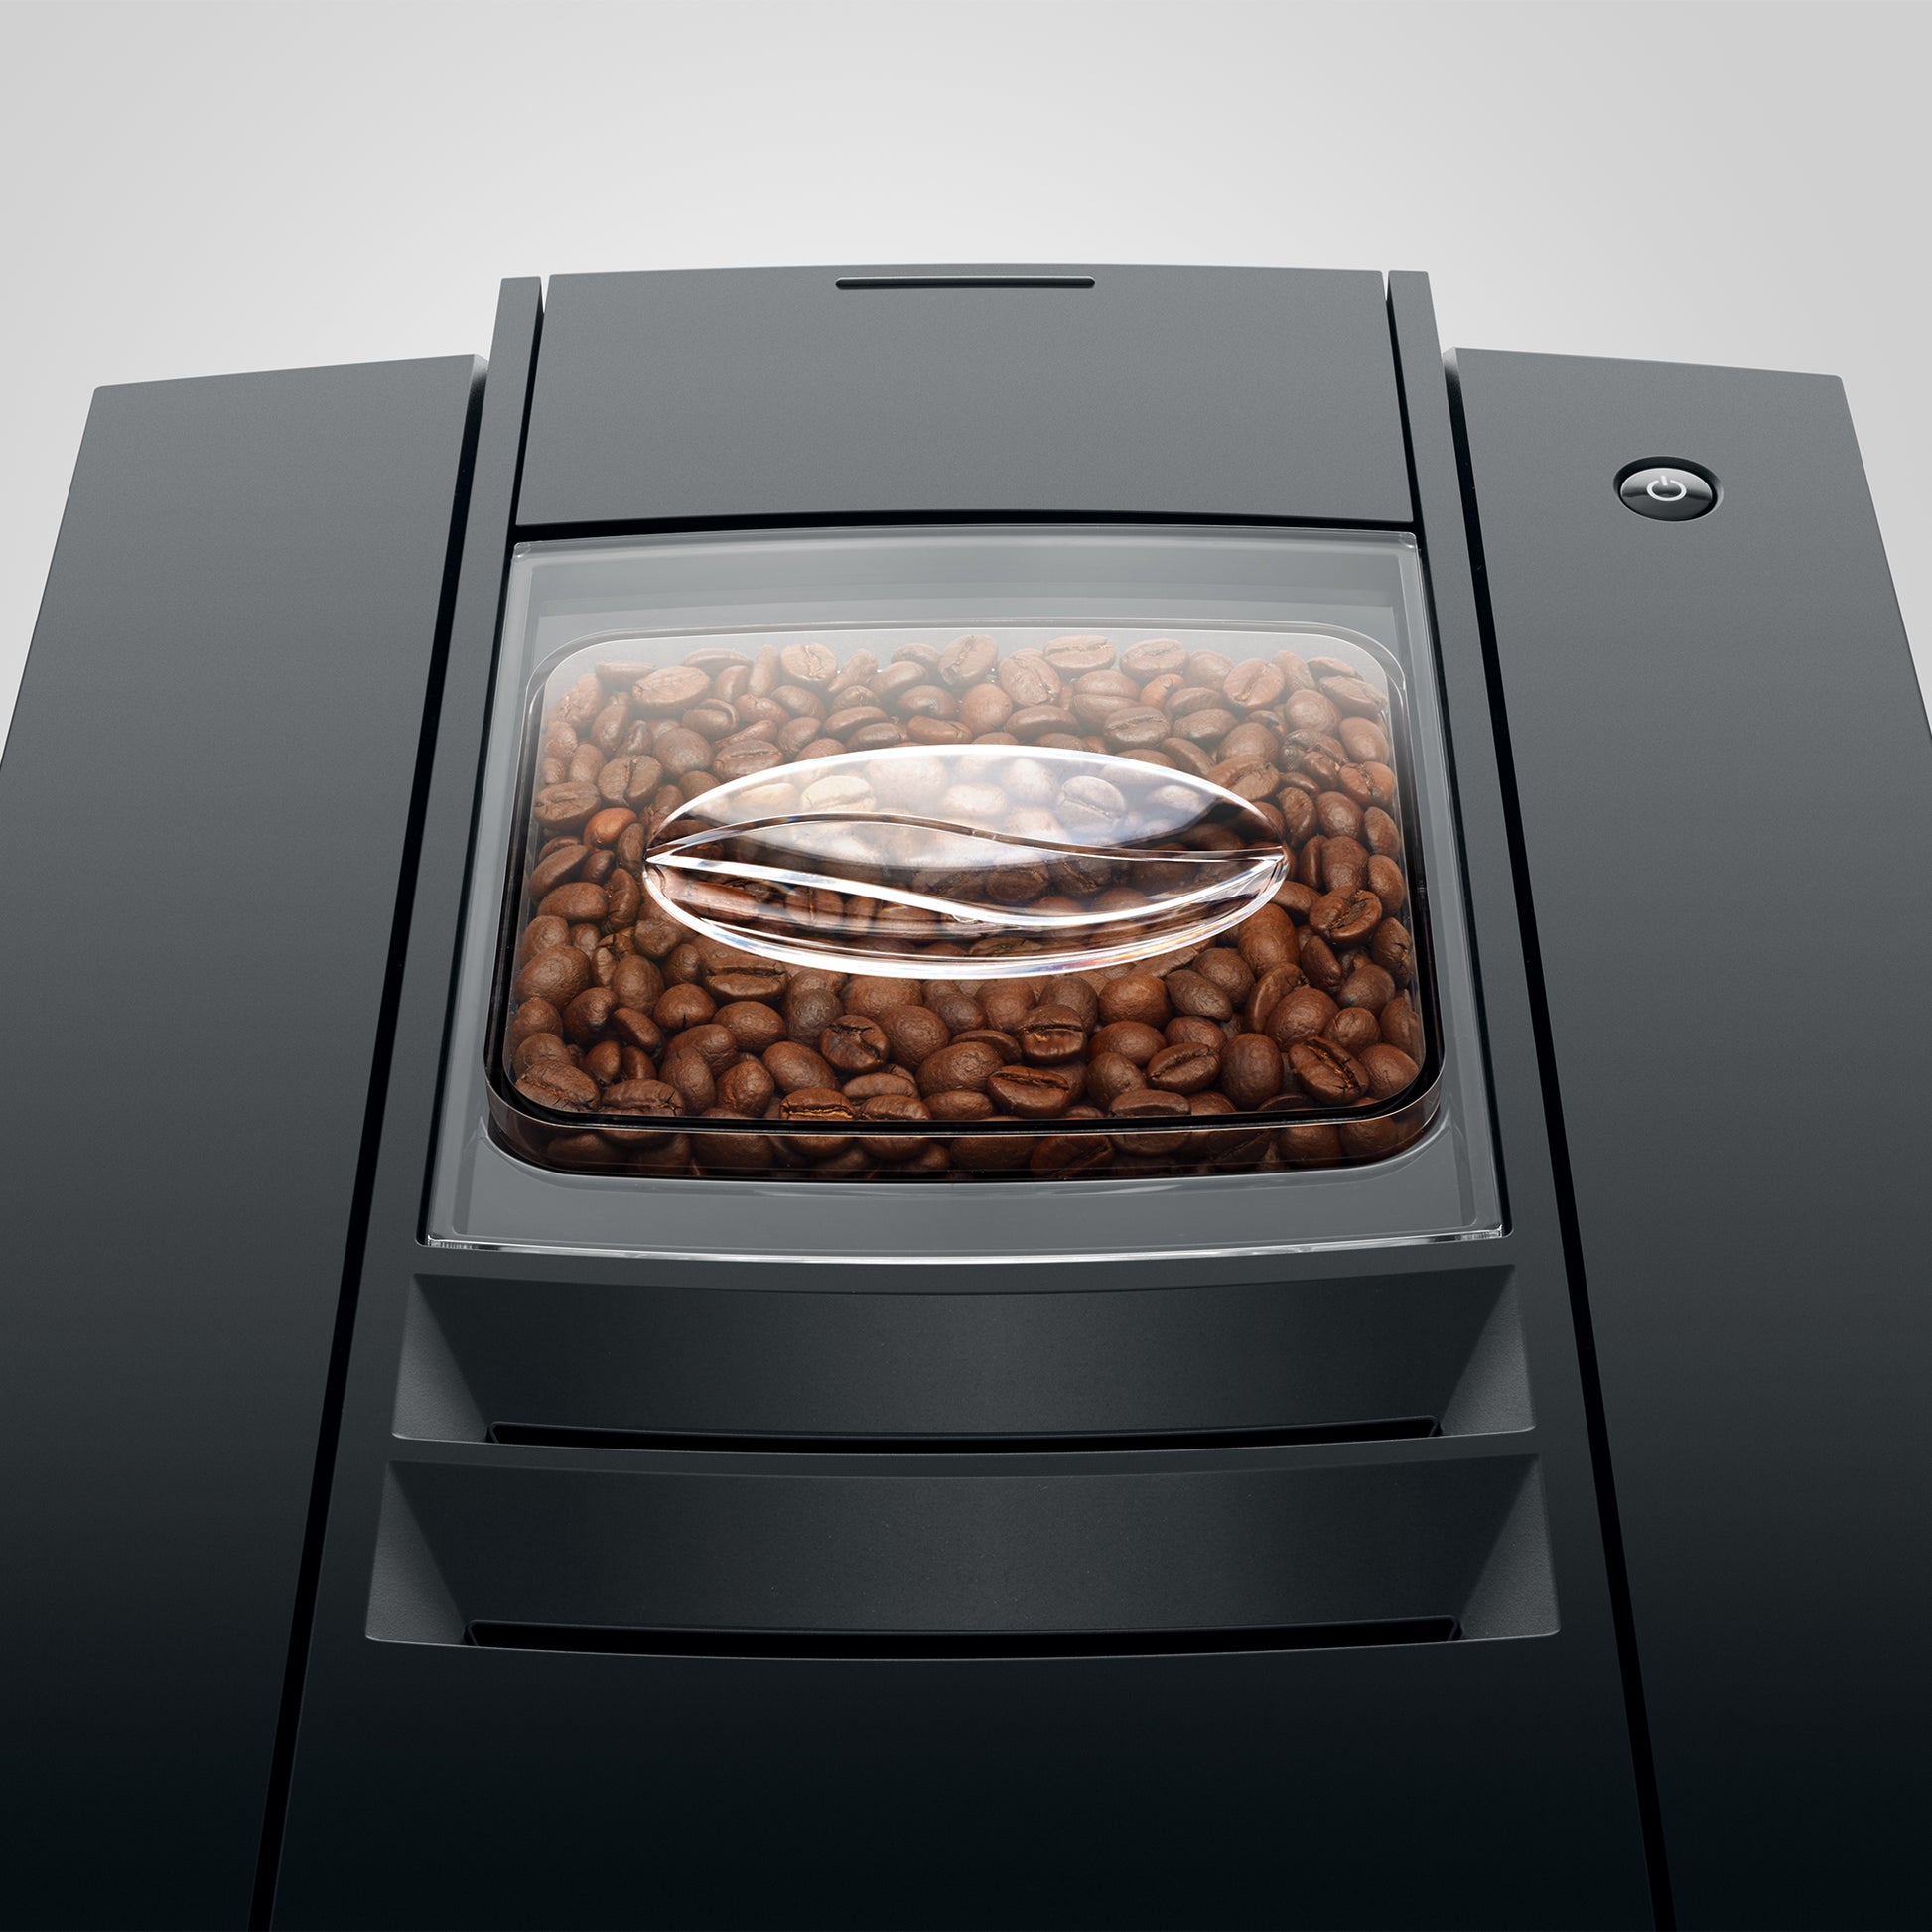 Machine espresso JURA E6 platinum